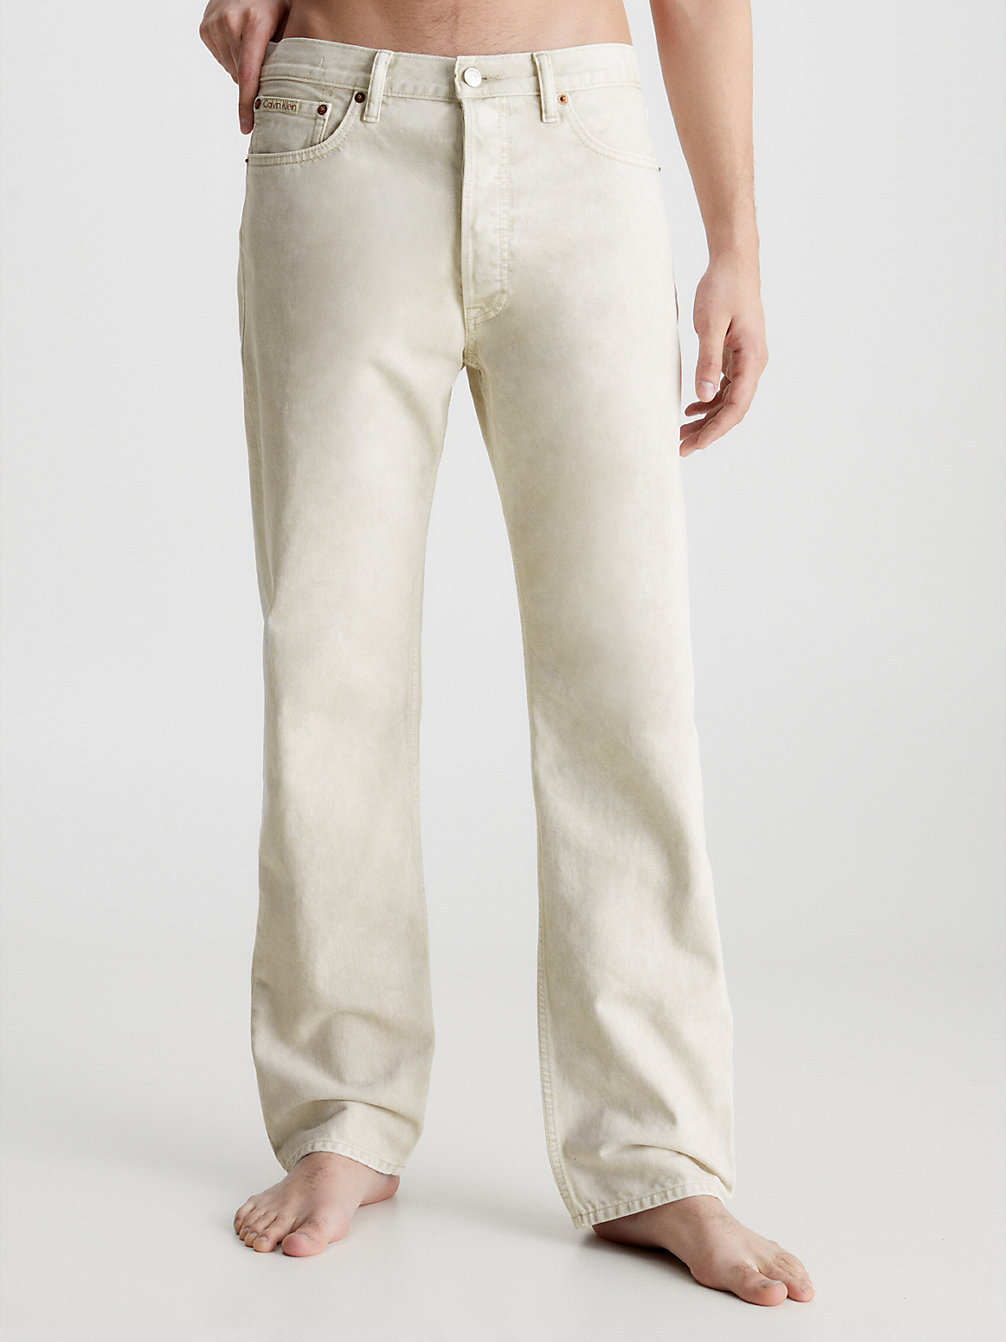 WHITE > Unisex Straight Jeans - CK Standards > undefined Herren - Calvin Klein